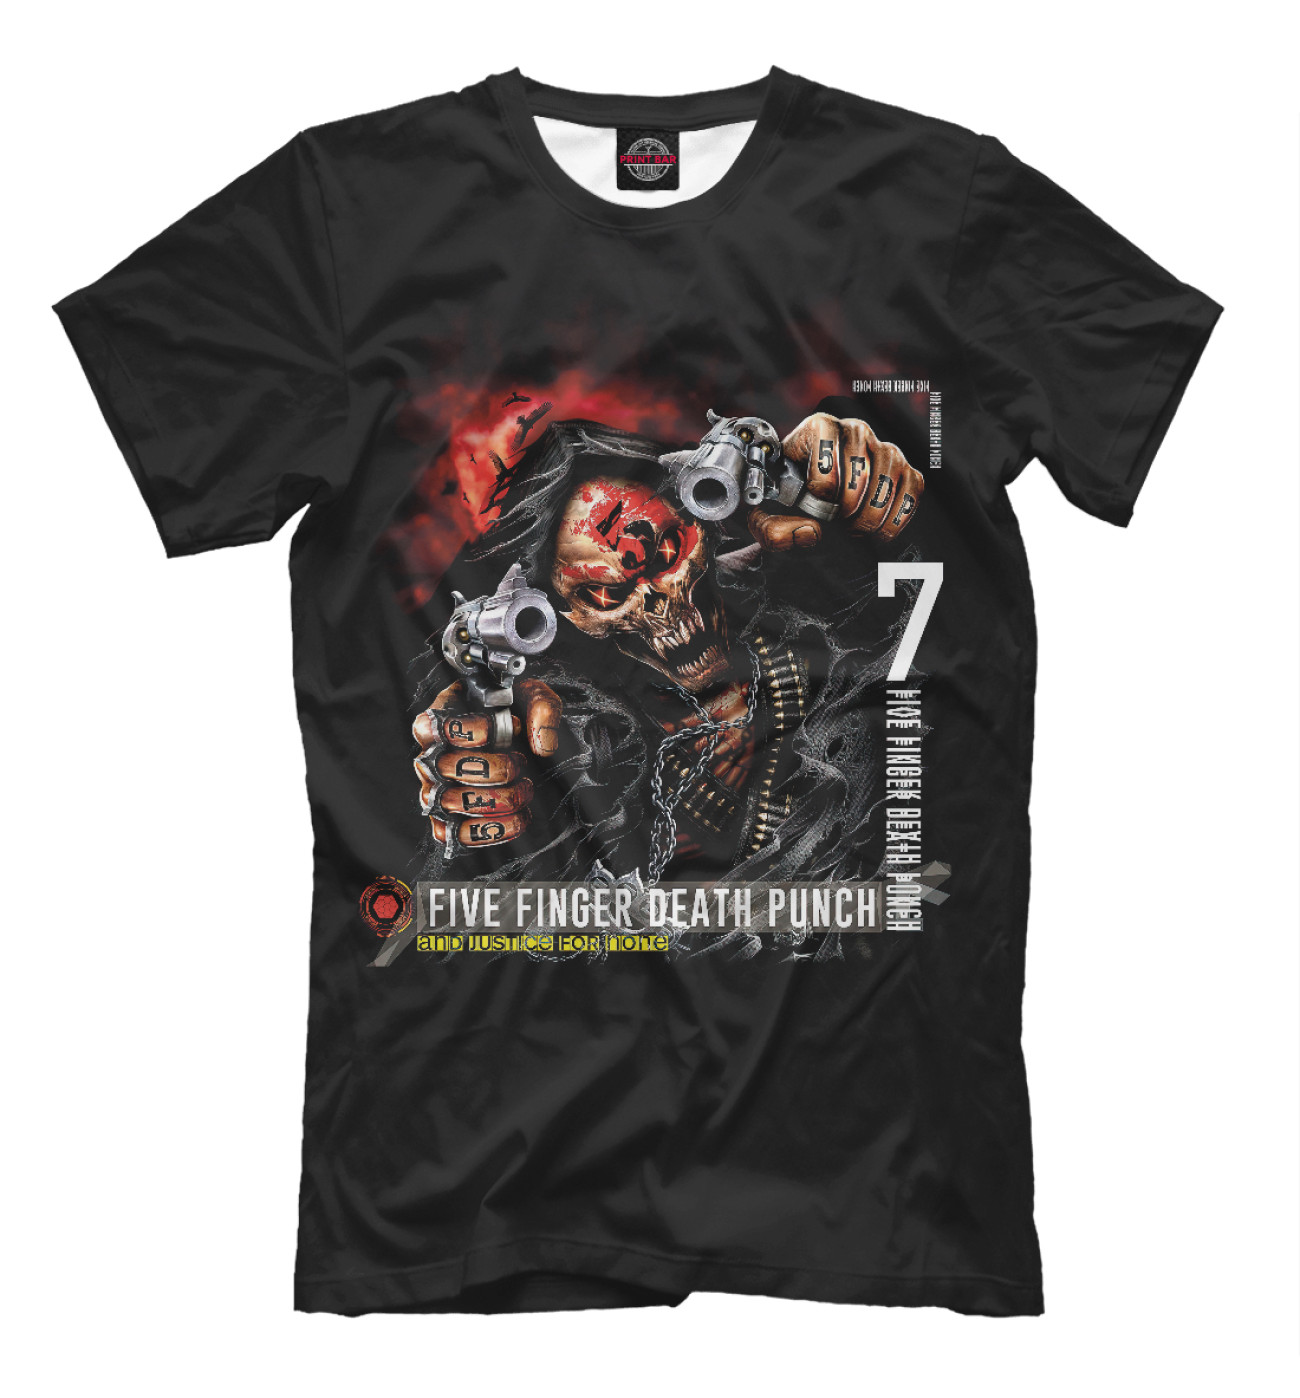 Мужская Футболка Five Finger Death Punch, артикул: FFD-606383-fut-2